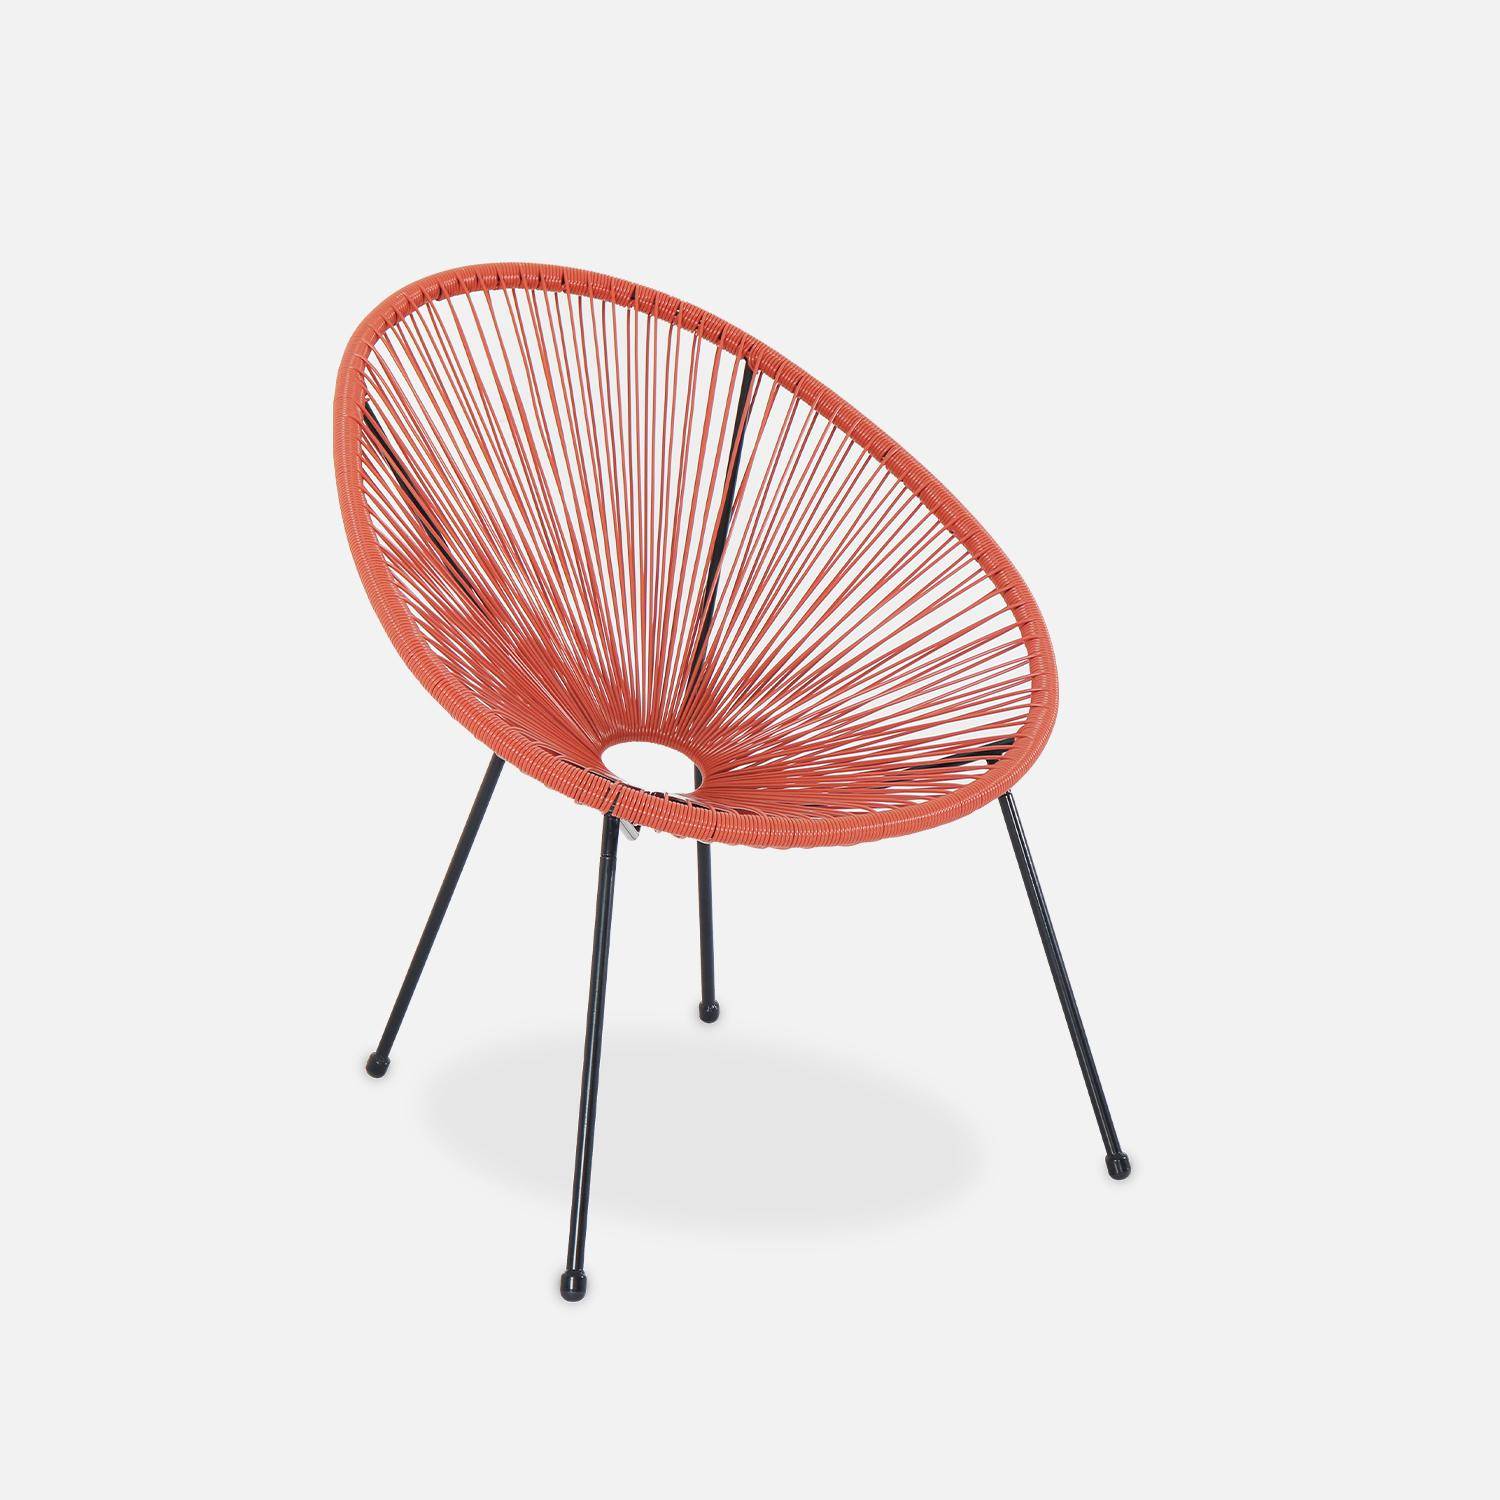 ACAPULCO stoel ei-vormig -Terra Cotta- Stoel 4 poten retro design, plastic koorden, binnen/buiten Photo2